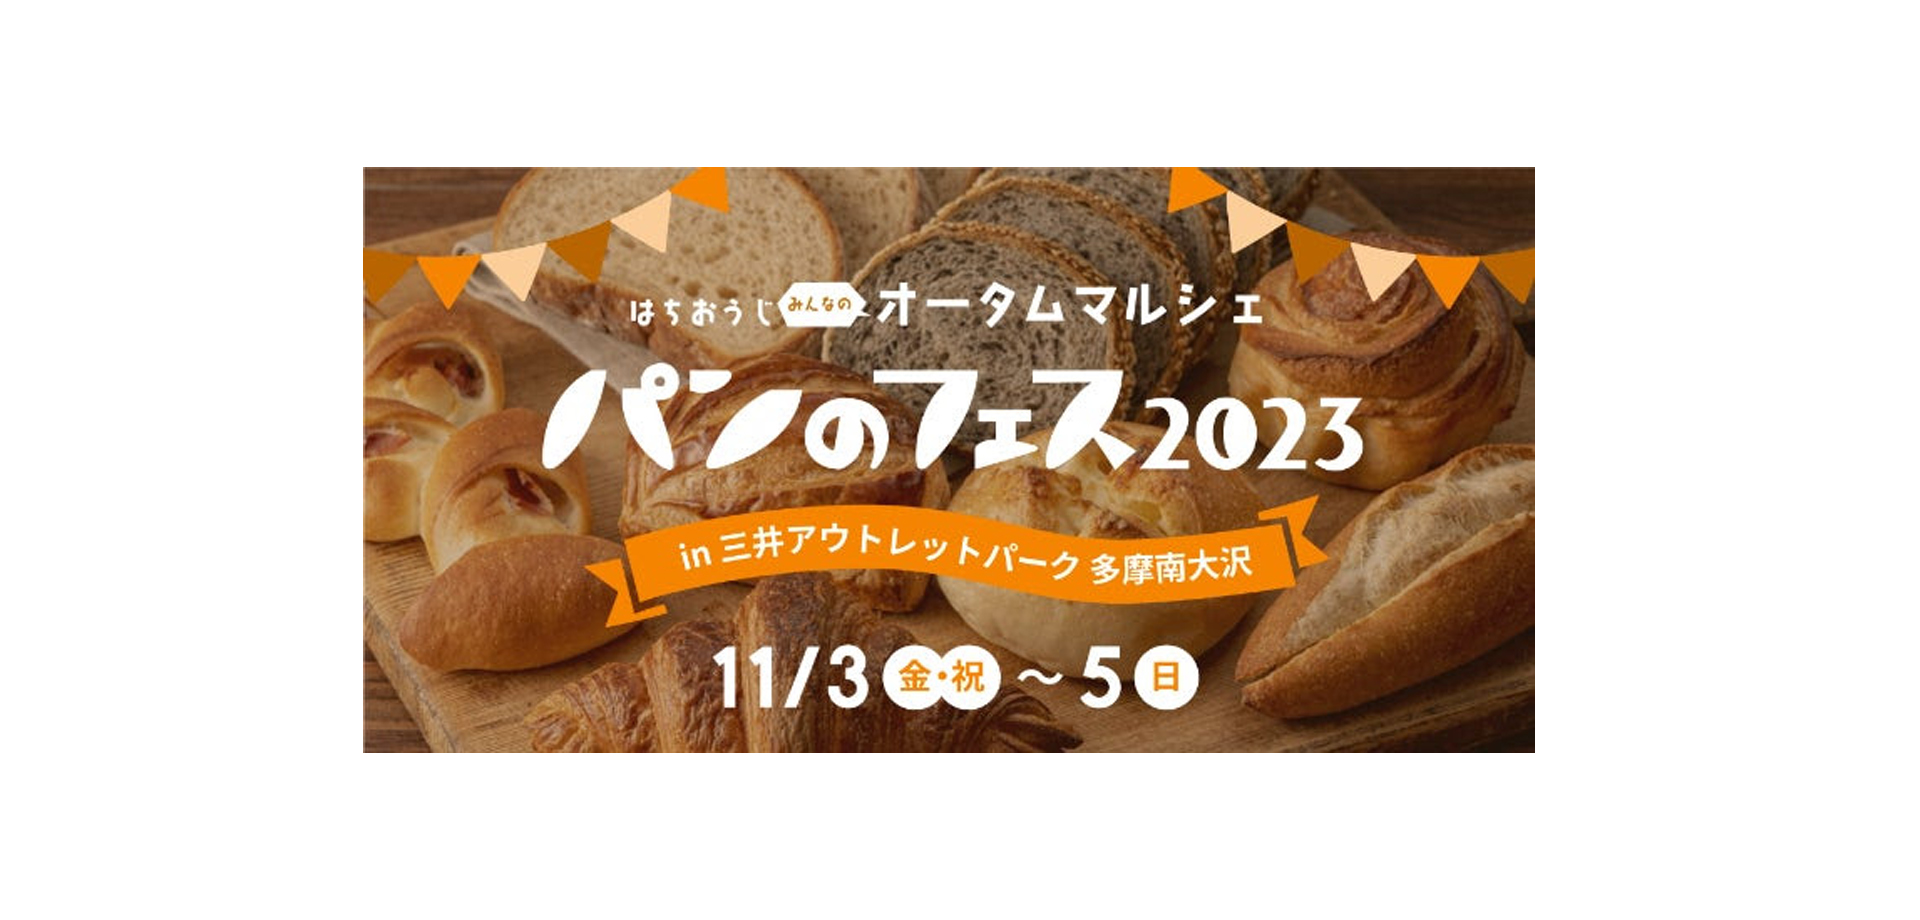 パンのフェス2023 in 三井アウトレットパーク 多摩南大沢バナー